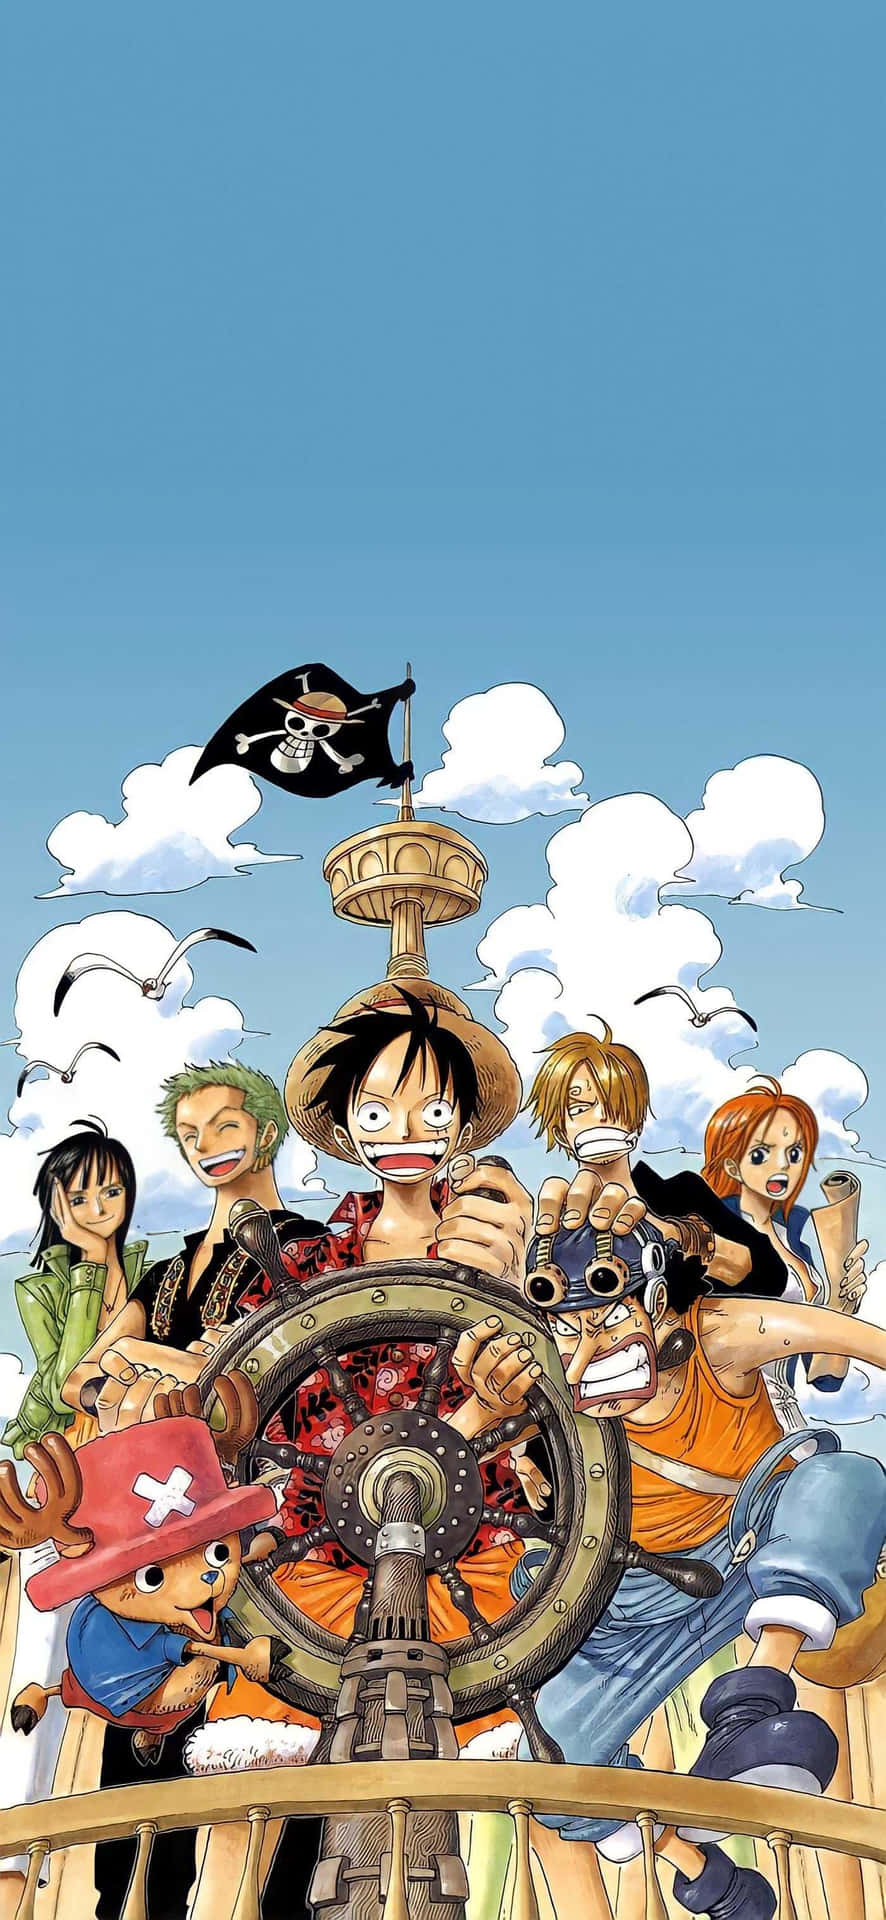 Personaggidi One Piece In Un'immagine Di Una Nave Pirata.